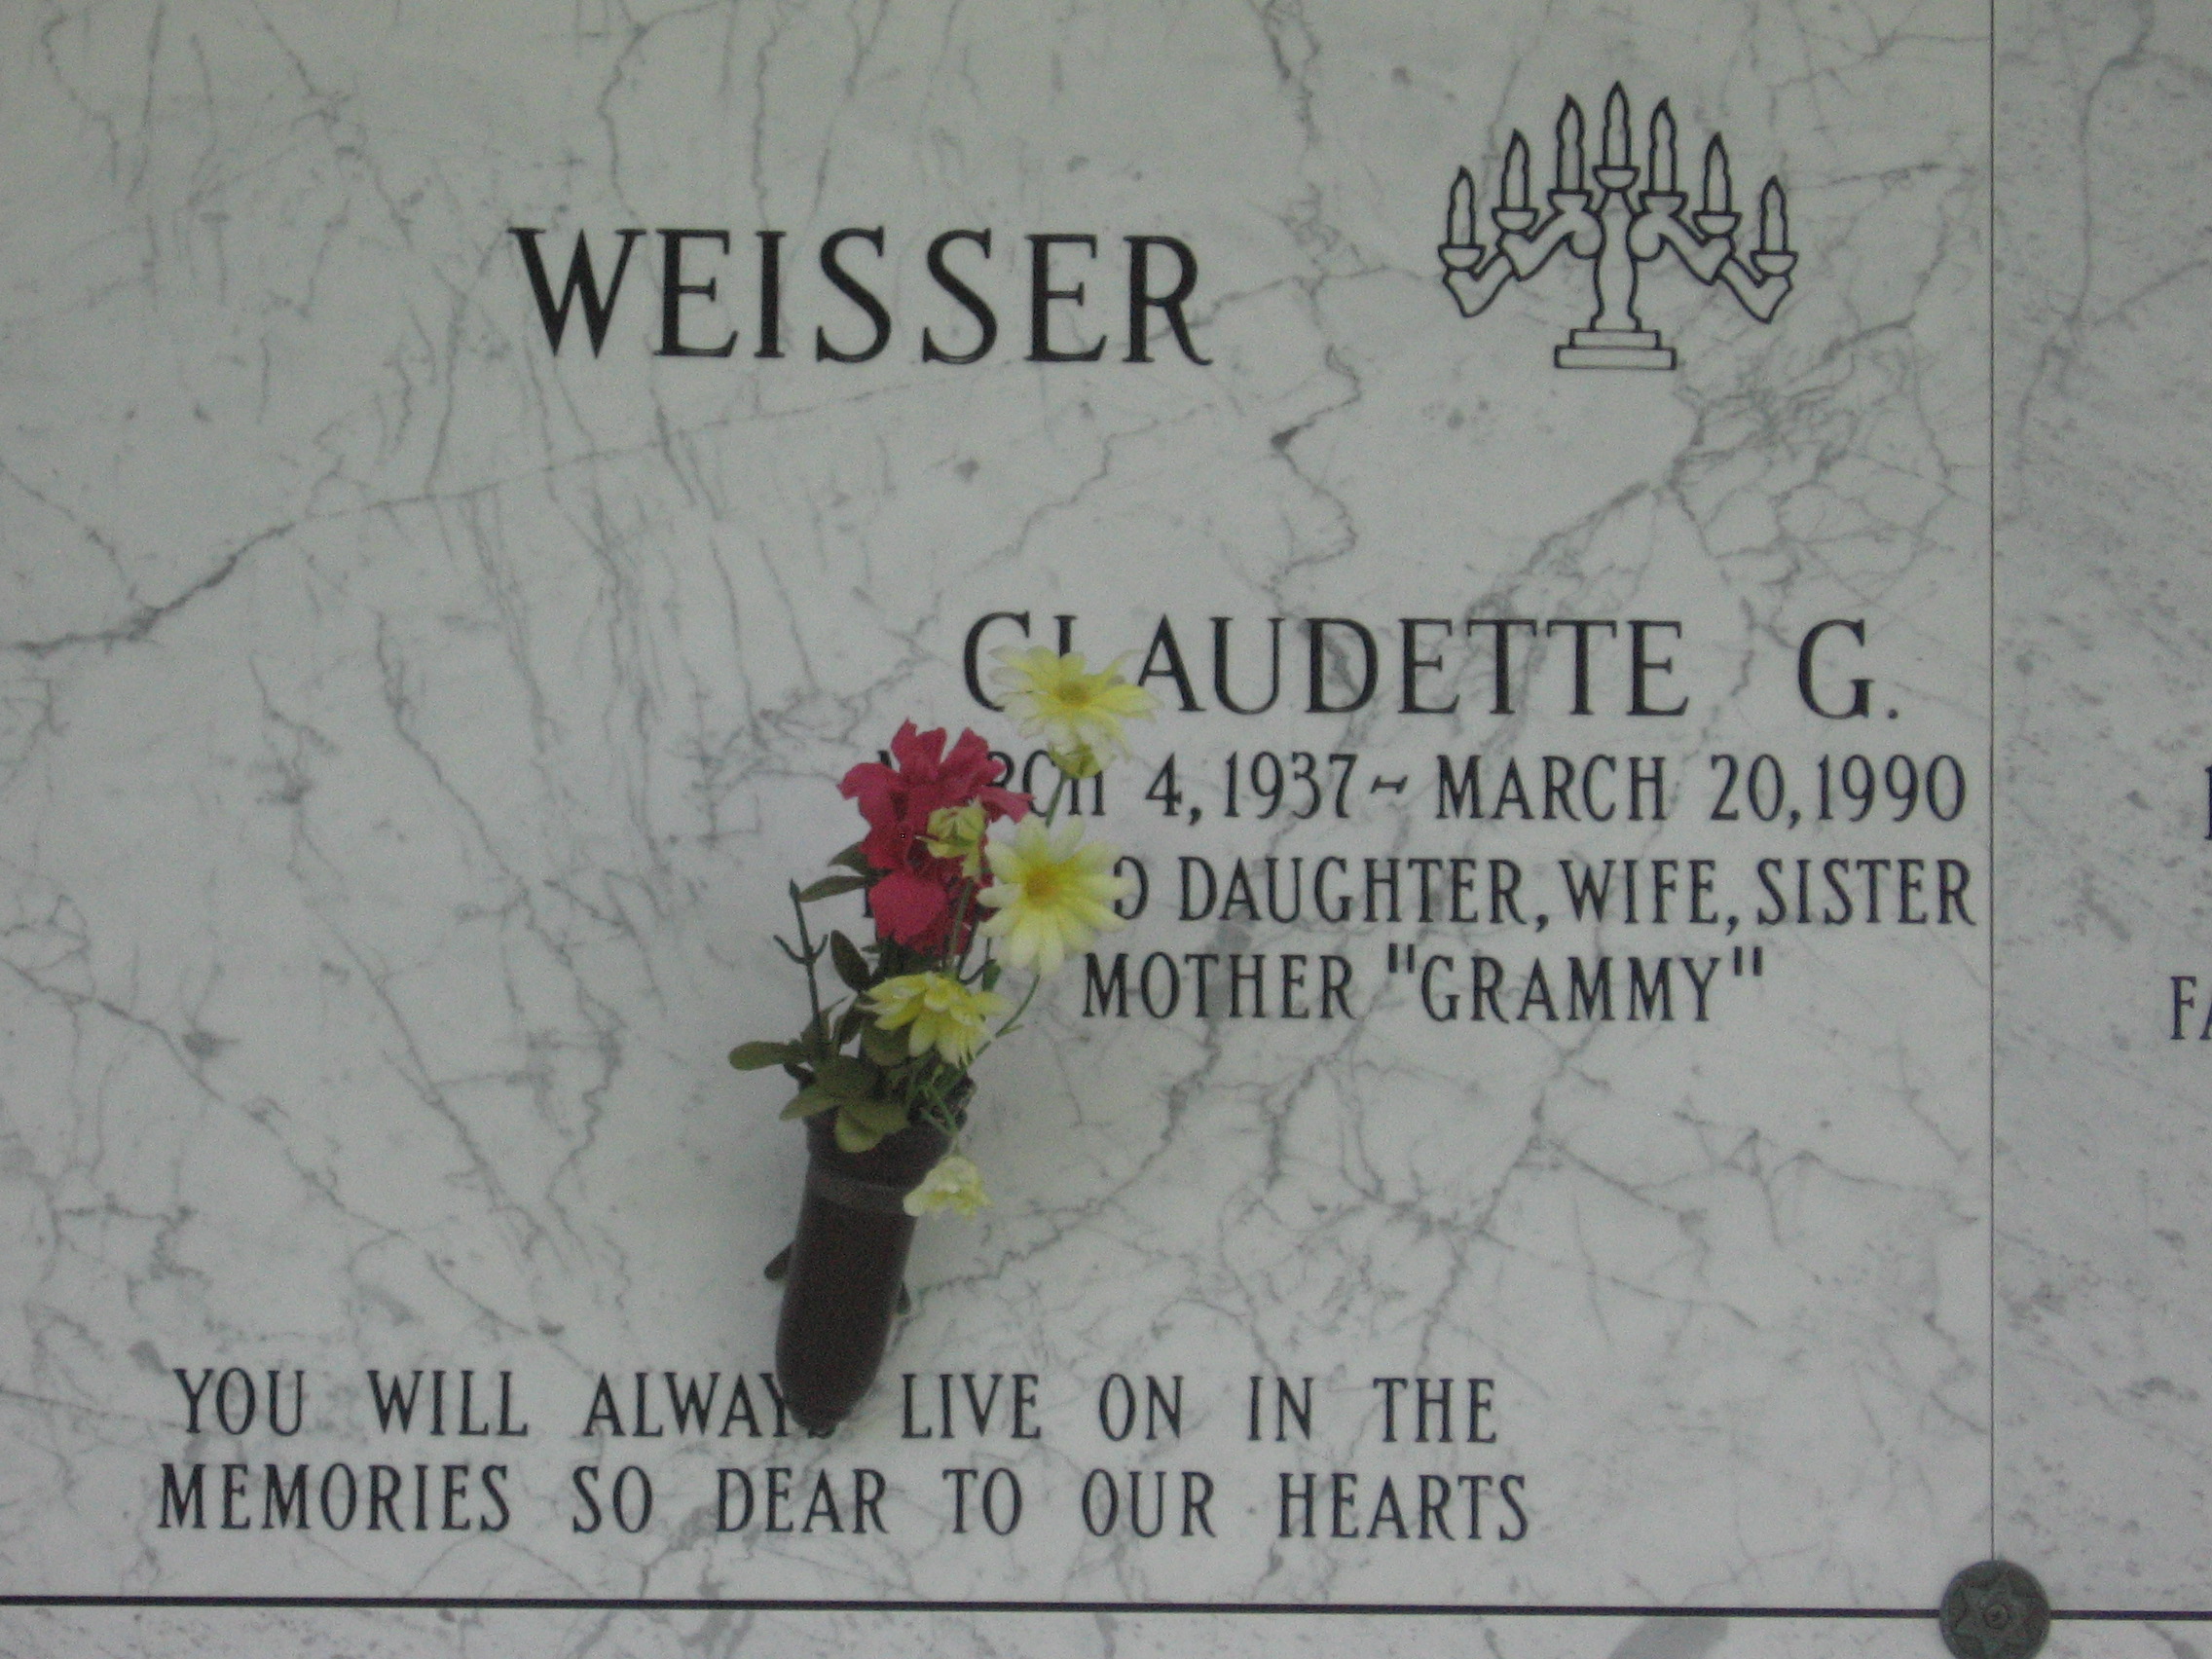 Claudette G Weisser